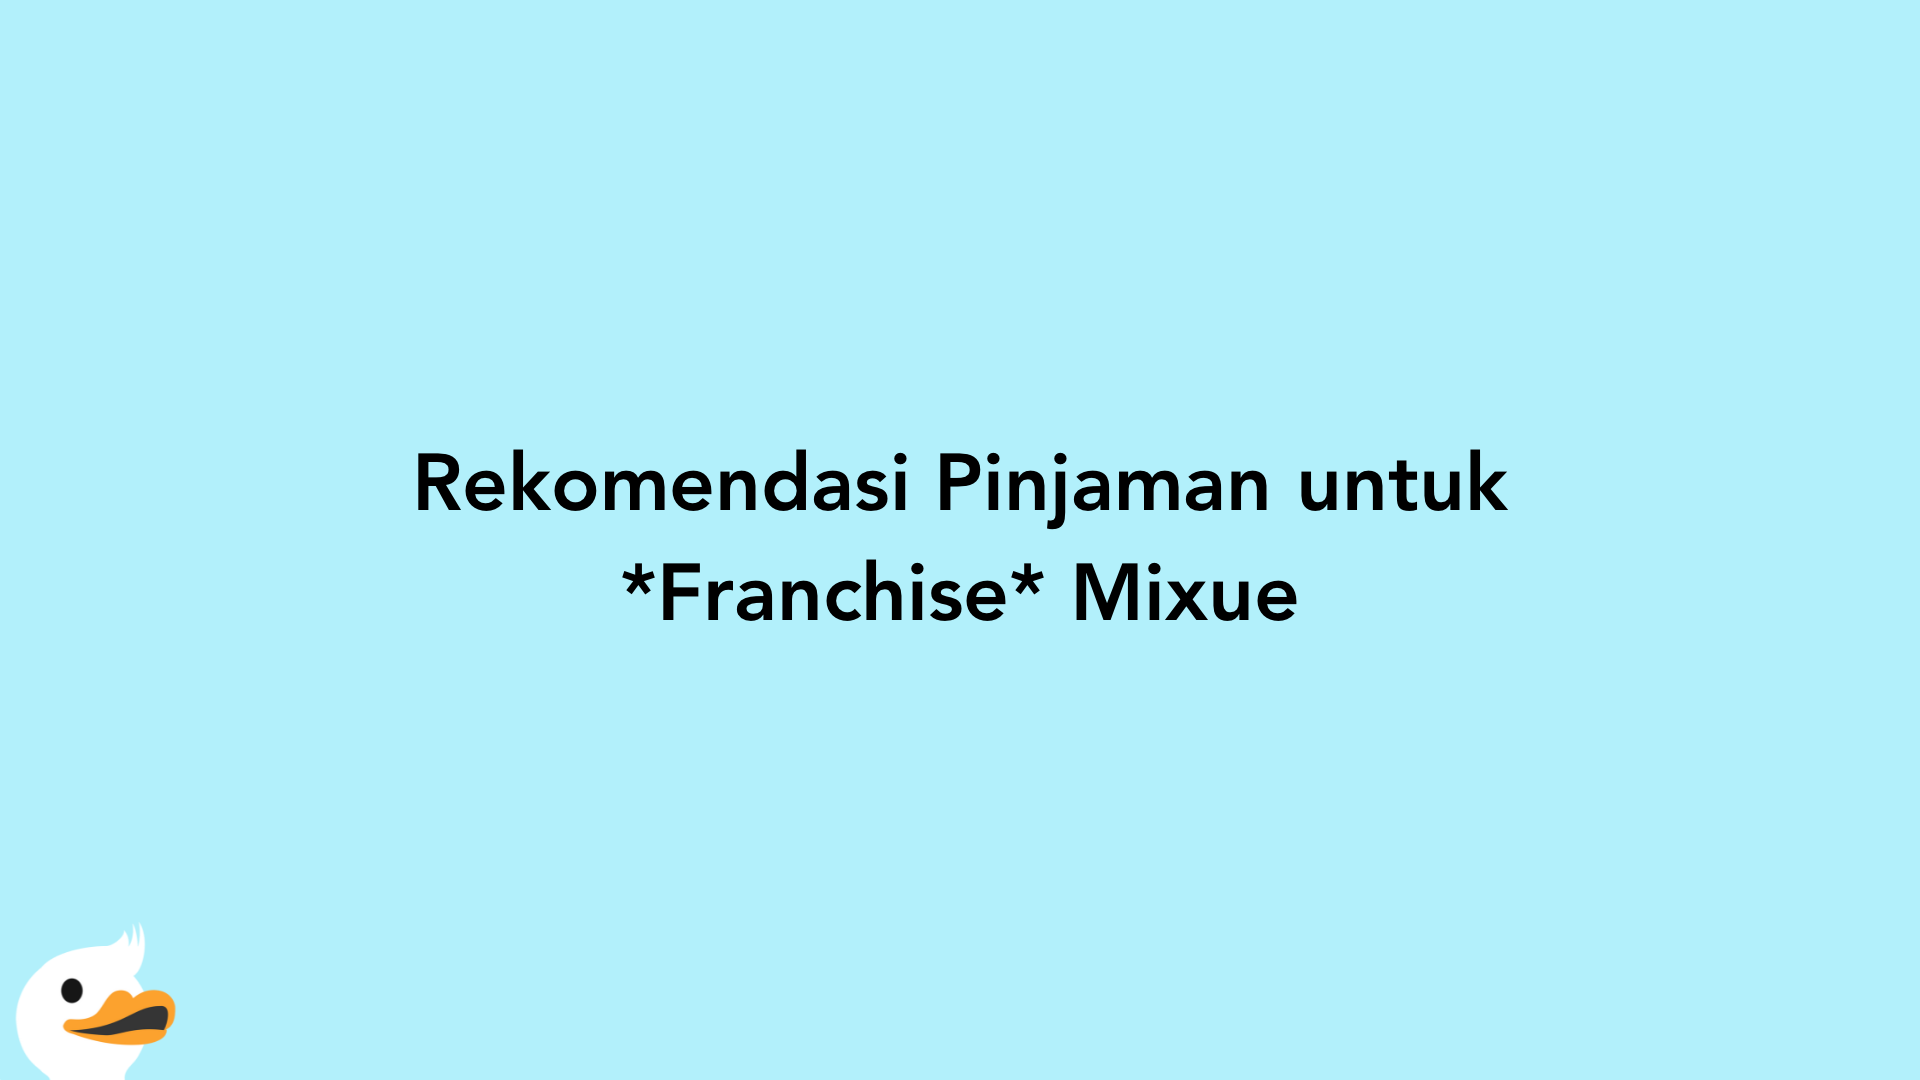 Rekomendasi Pinjaman untuk Franchise Mixue